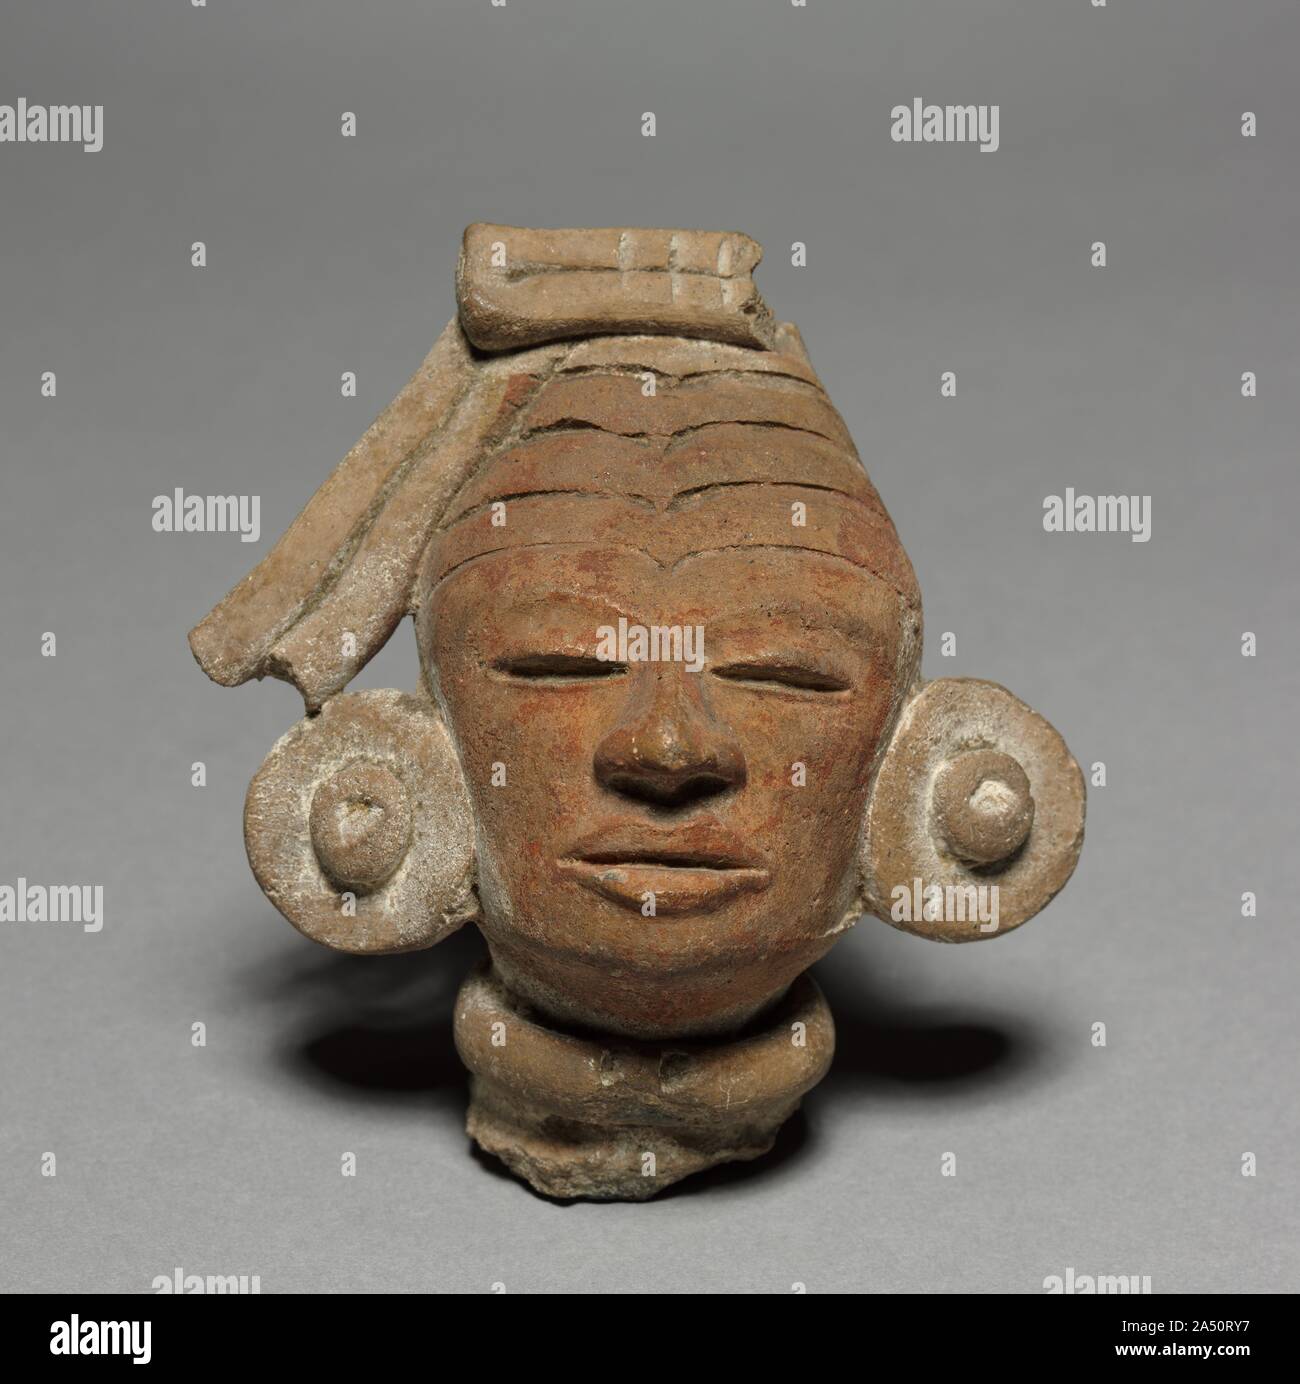 Tête de figurine, Fragment 350. Les premières figurines de Teotihuacan sont modélisés à la main, alors que plus tard les spécimens ont été produites avec des moules. Ce très grand exemple a un moule fait de tête, avec des traits de visage retouché avec soin à la main. Figurines en terre cuite ont été faites en grande abondance tout au long de l'histoire de Teotihuacan, et peut avoir été utilisé dans les rituels religieux. Banque D'Images